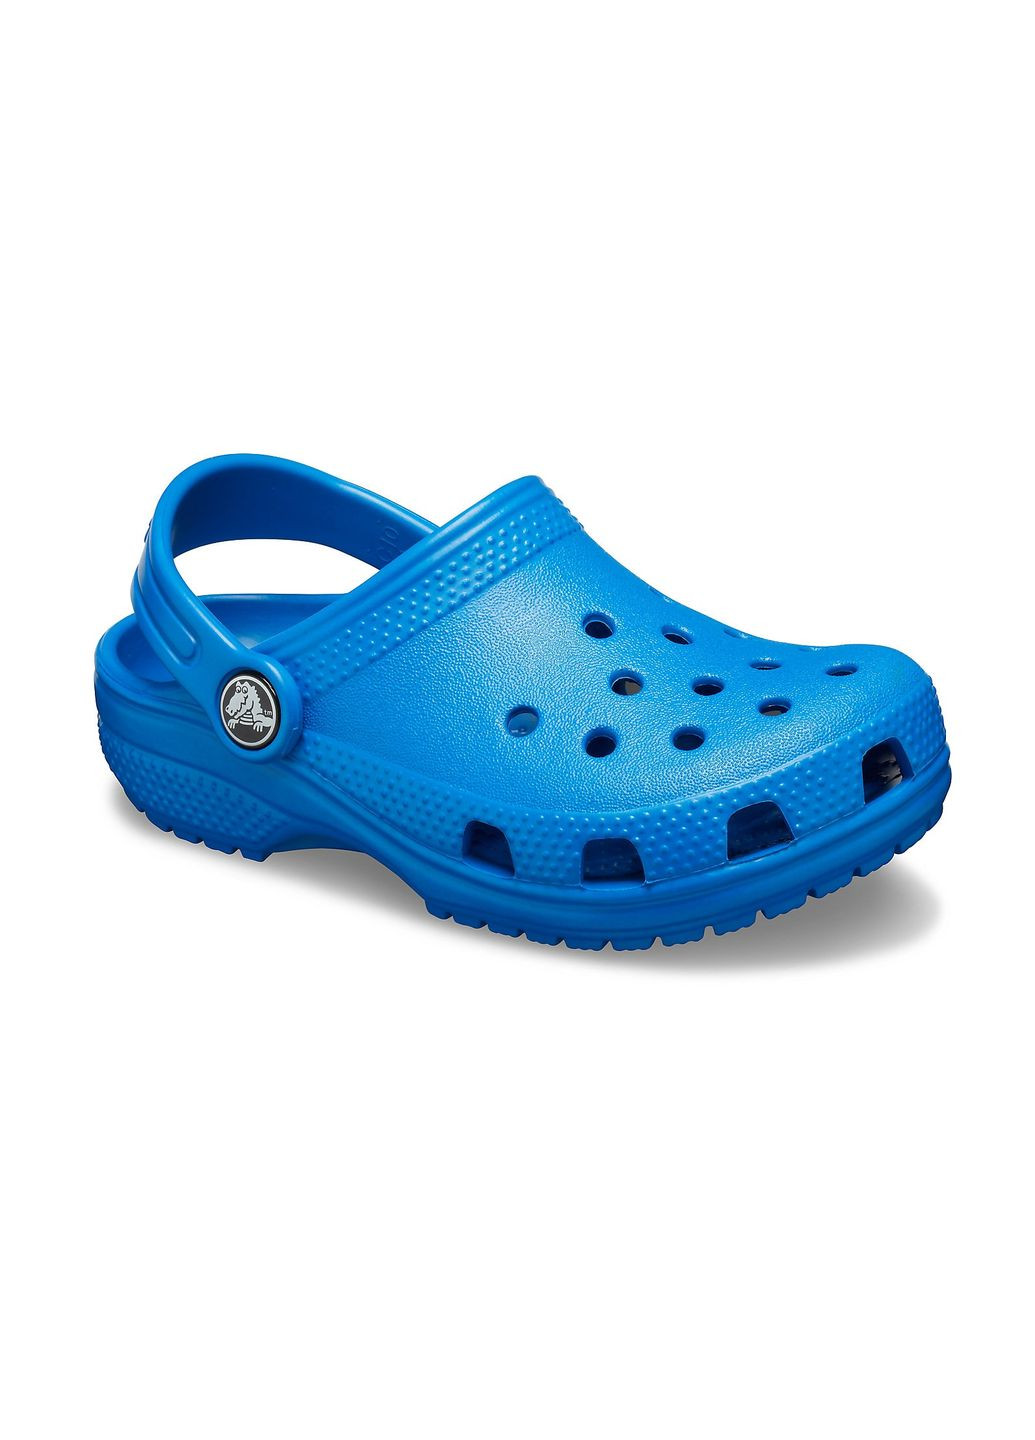 Синие сабо kids classic clog blue bolt c8\25\15.5 см 206991 Crocs